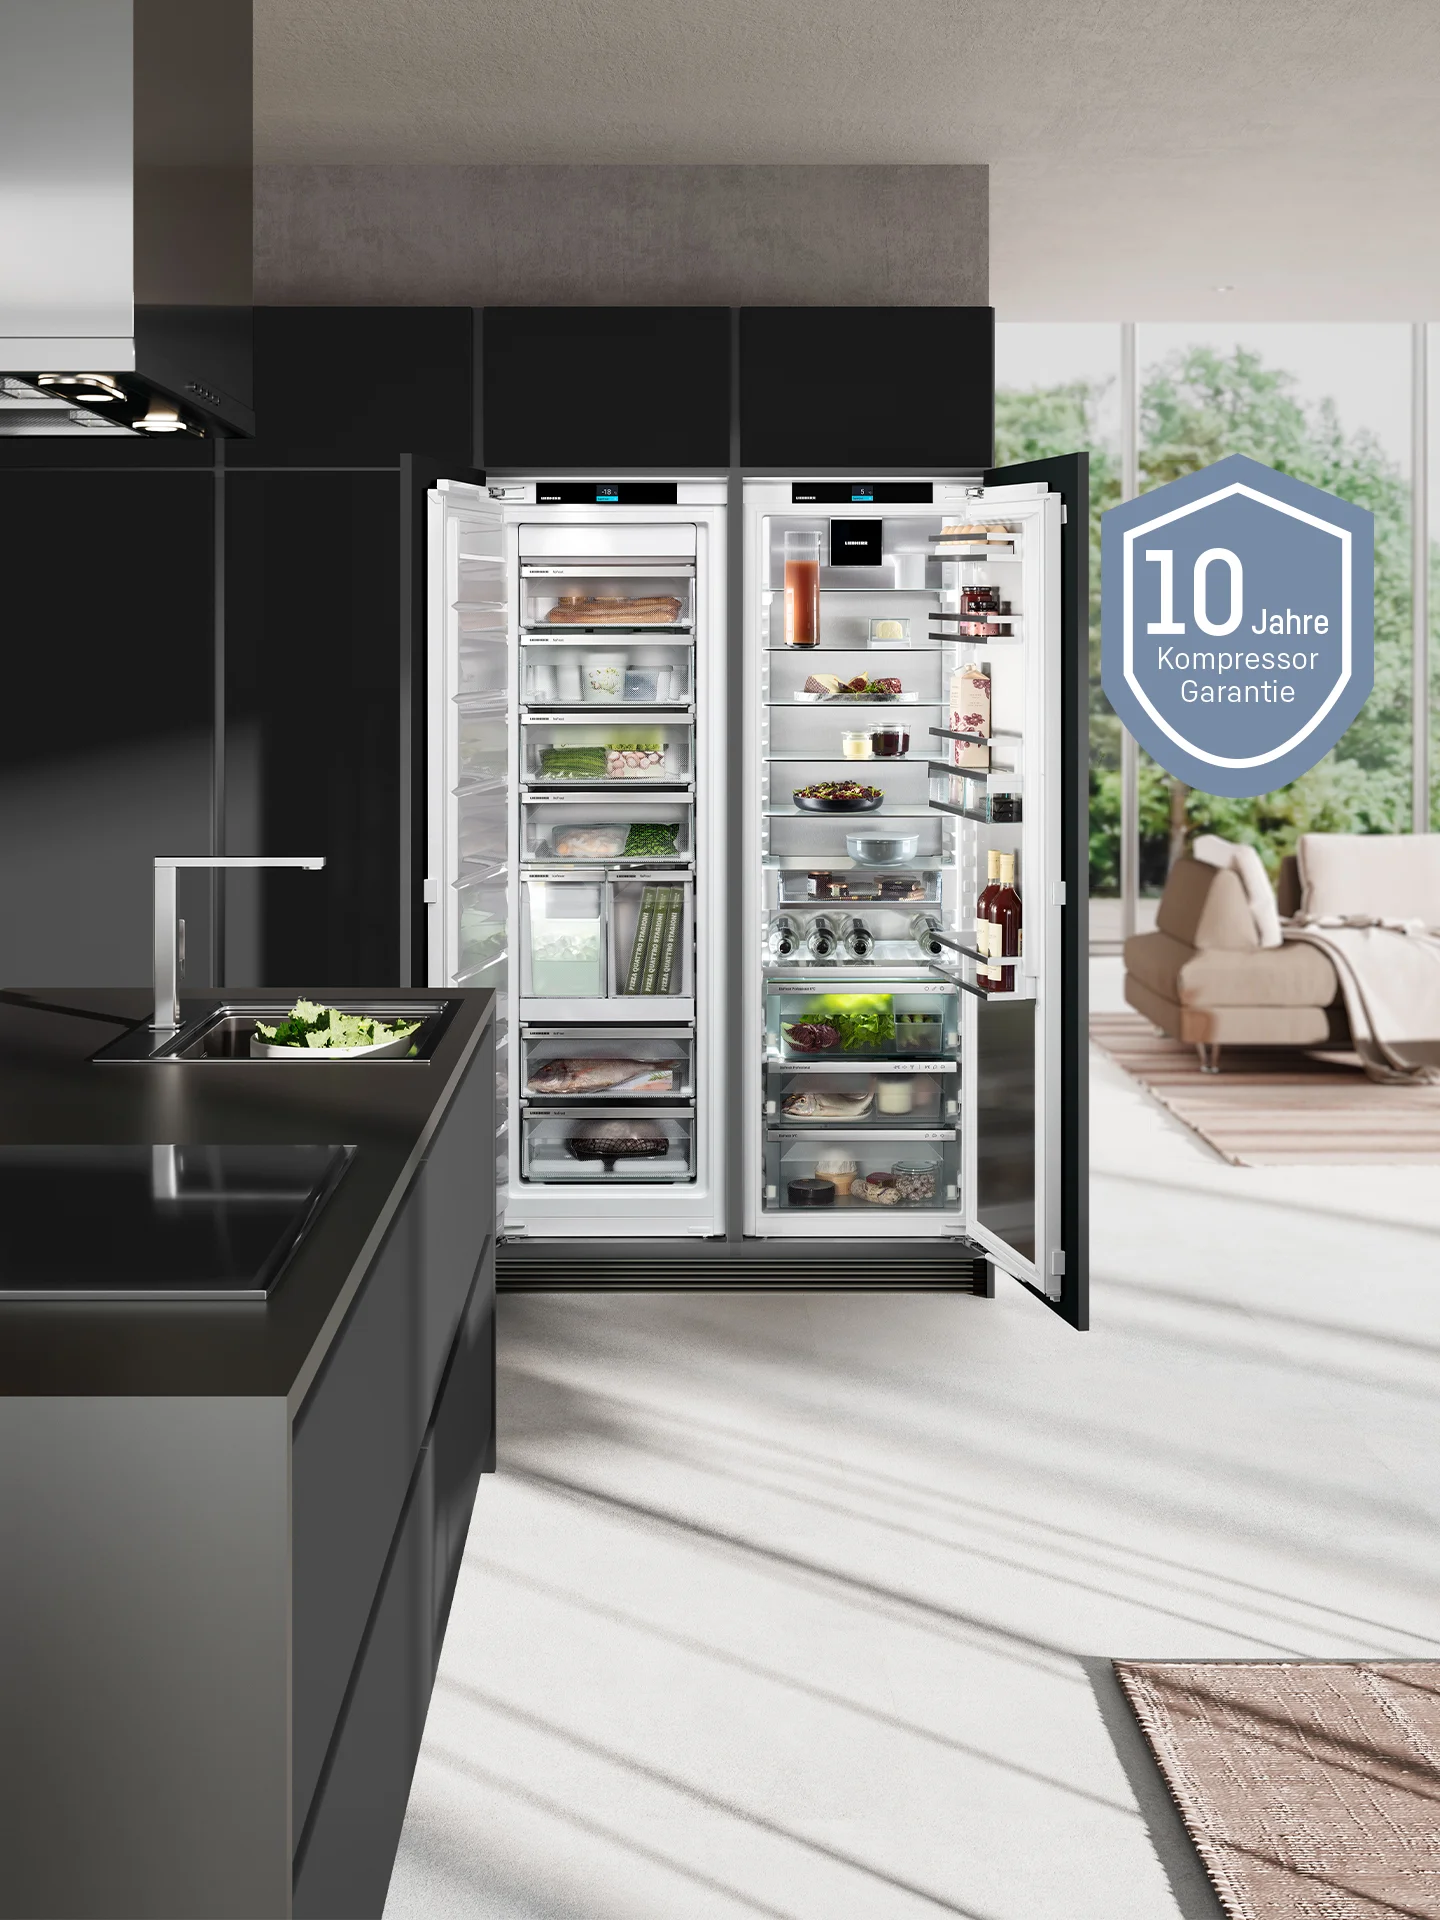 Side-by-Side Kühlschrank in Küche mit 10 Jahre Kompressorgarantie Icon